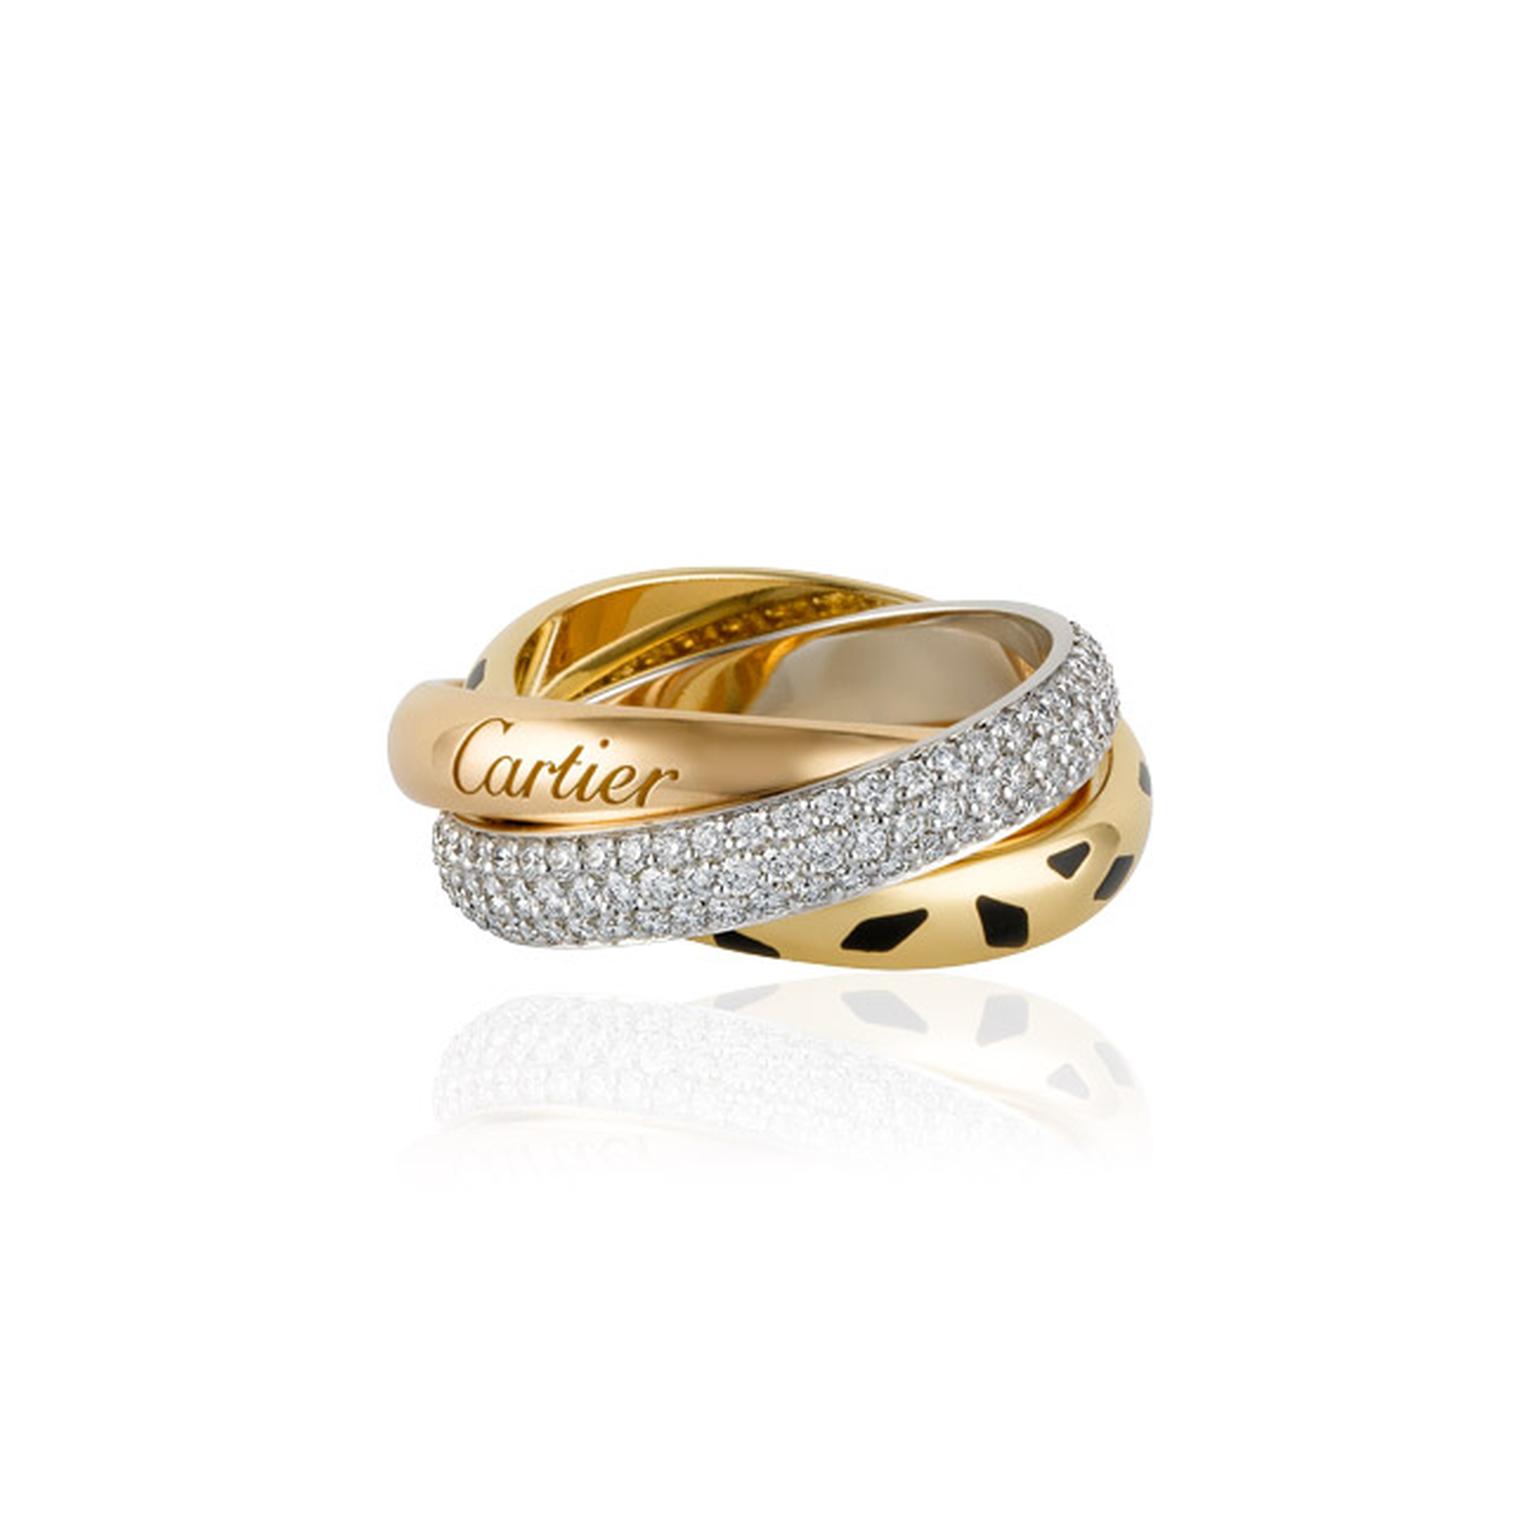 Cartier-Sauvage-Trinity-Ring-Main